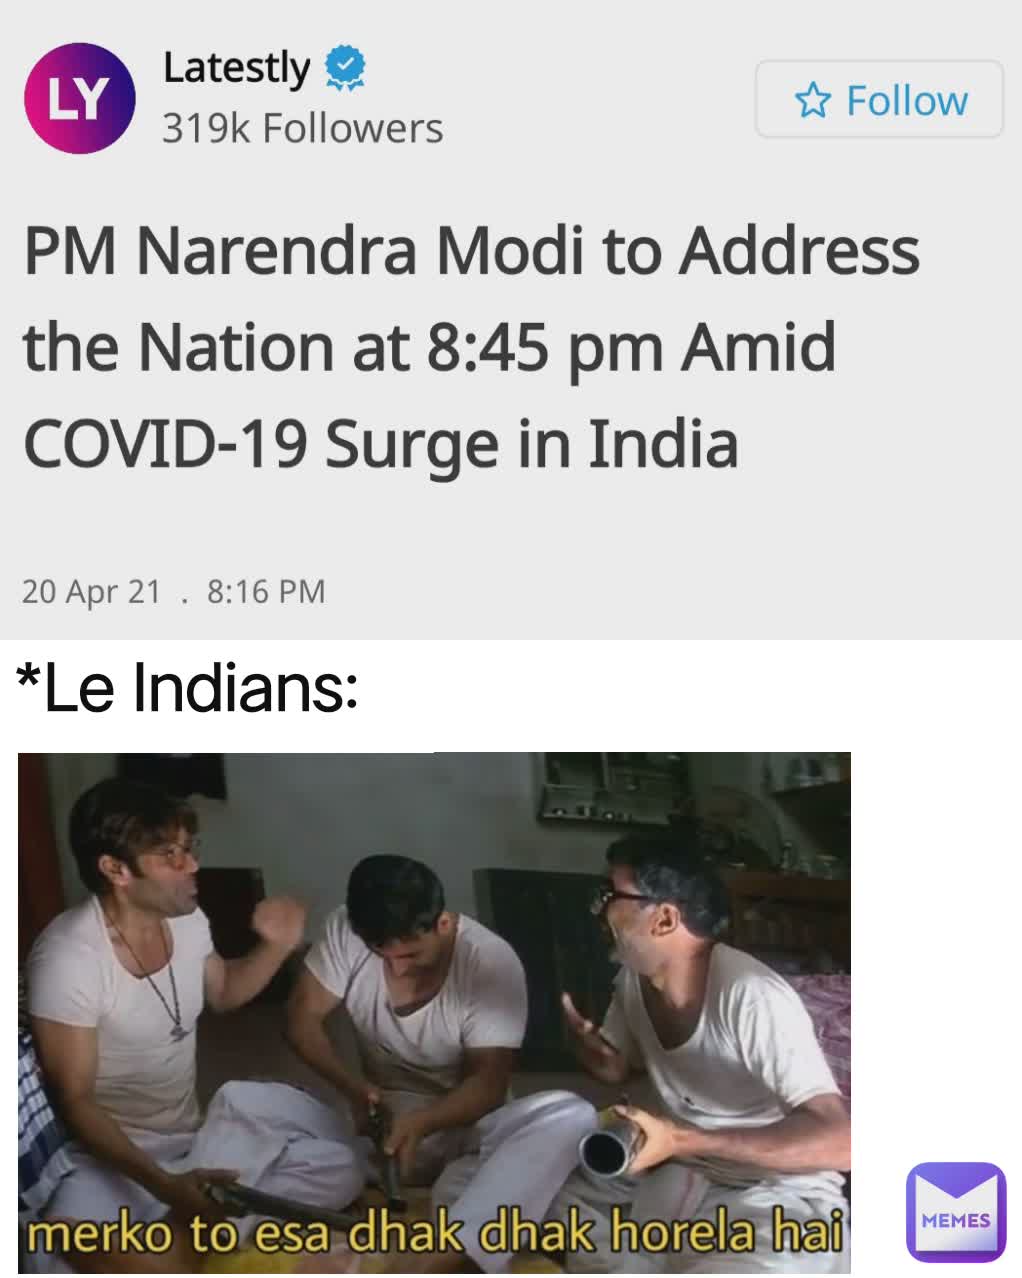 *Le Indians: